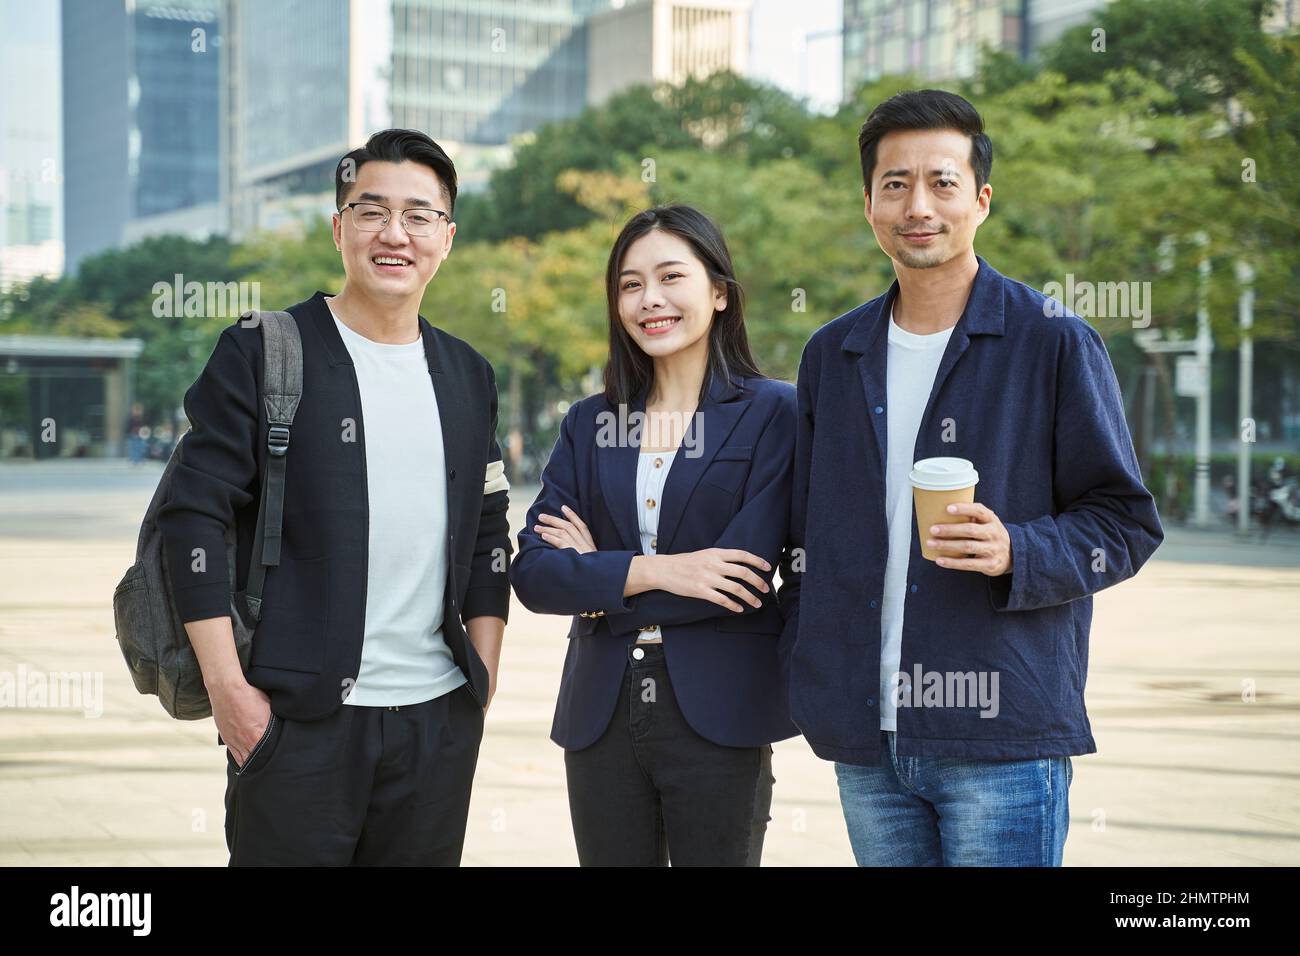 Außenportrait von drei jungen asiatischen Menschen, die glücklich und lächelnd stehen Stockfoto